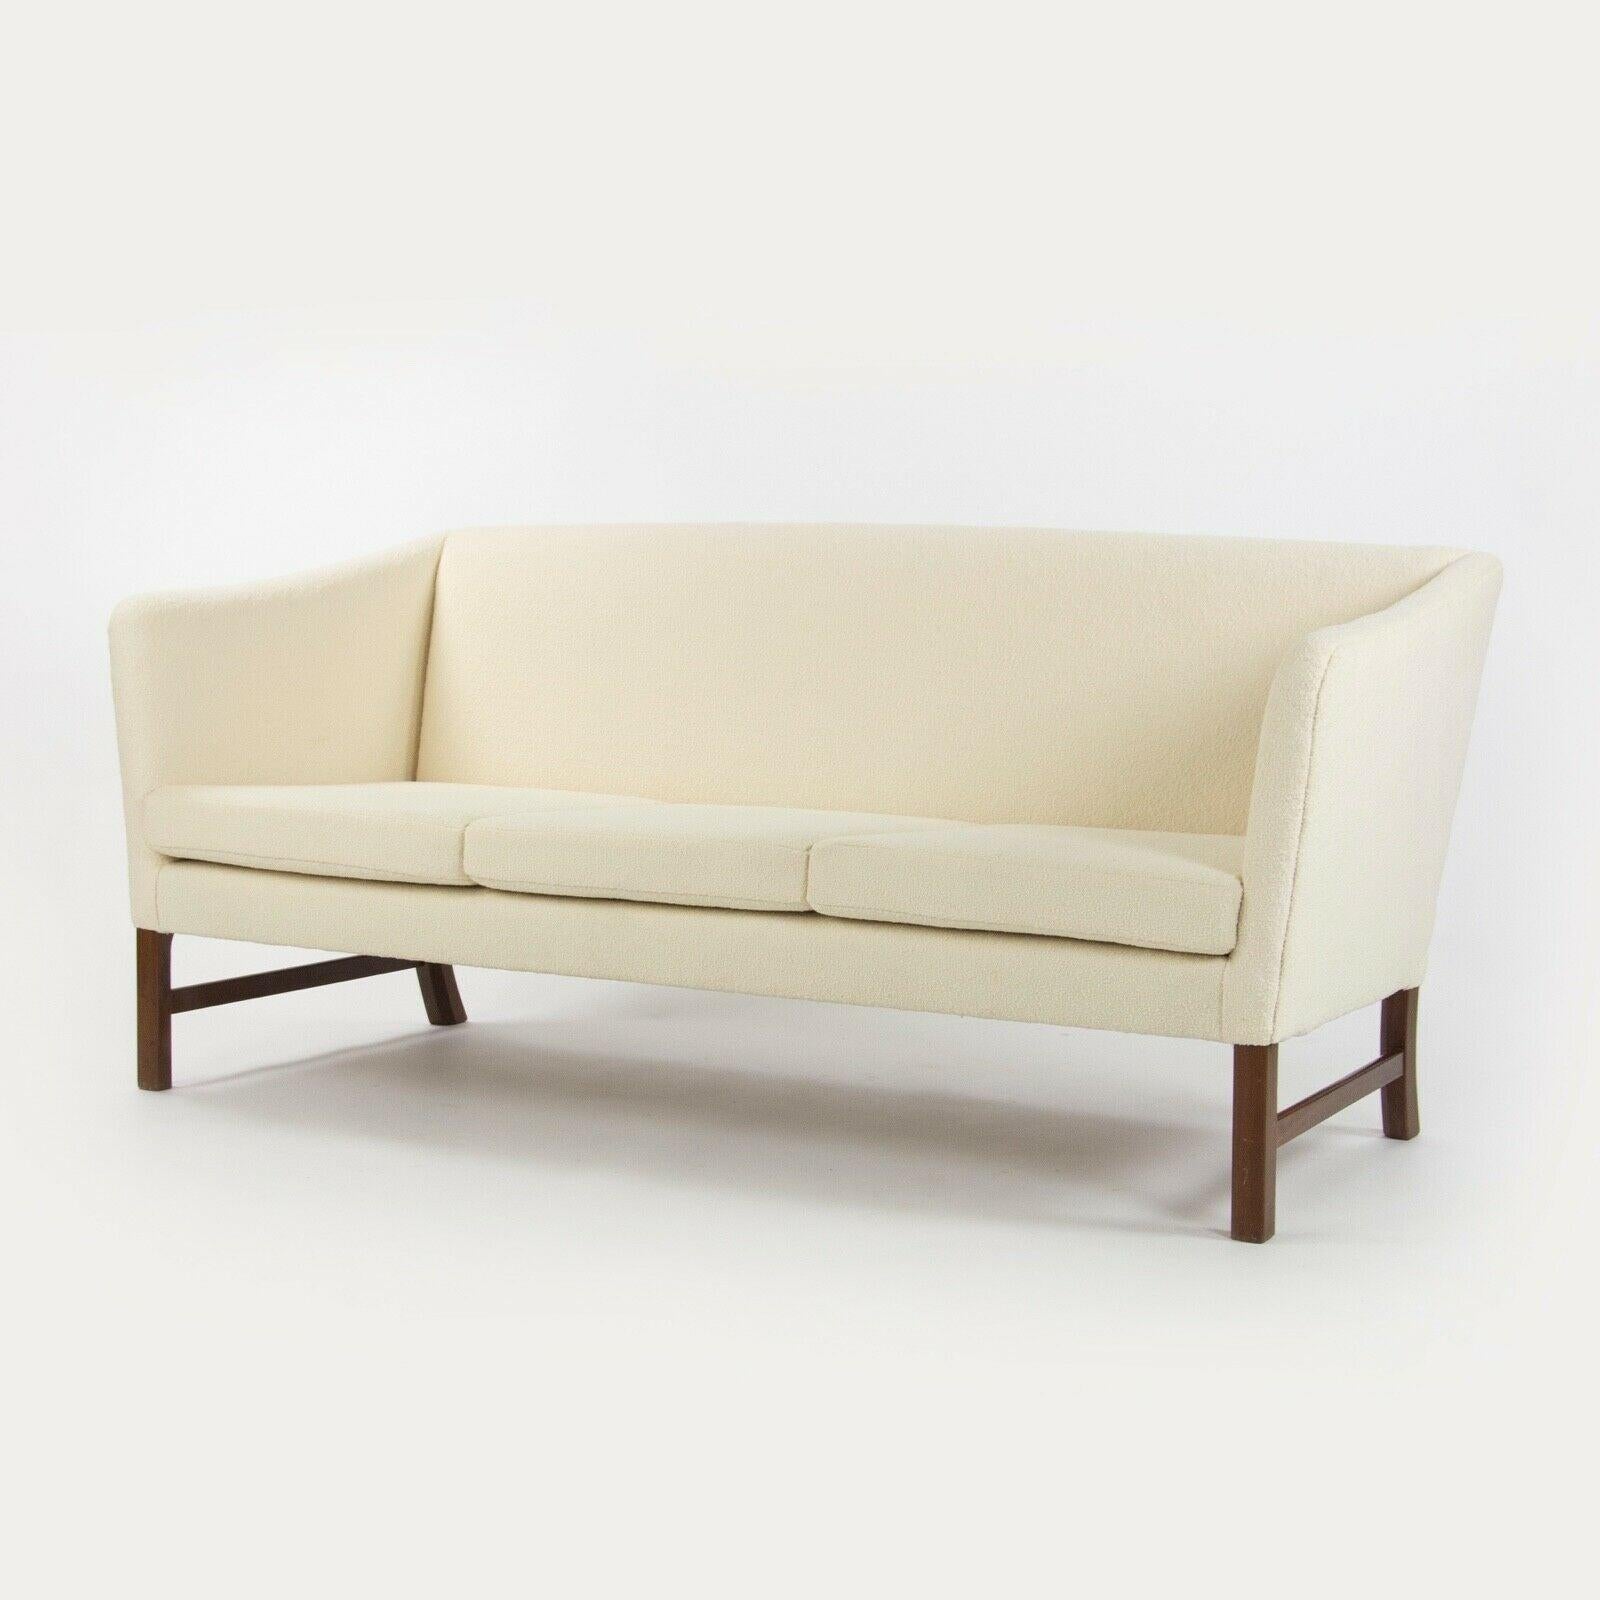 Nous vous proposons à la vente un canapé 3 places en tissu bouclé blanc de Ole Wanscher datant des années 1960. Il s'agit d'un superbe exemplaire qui vient d'être retapissé par l'atelier de tapisserie d'ameublement Forthright NYC, qui jouit d'une